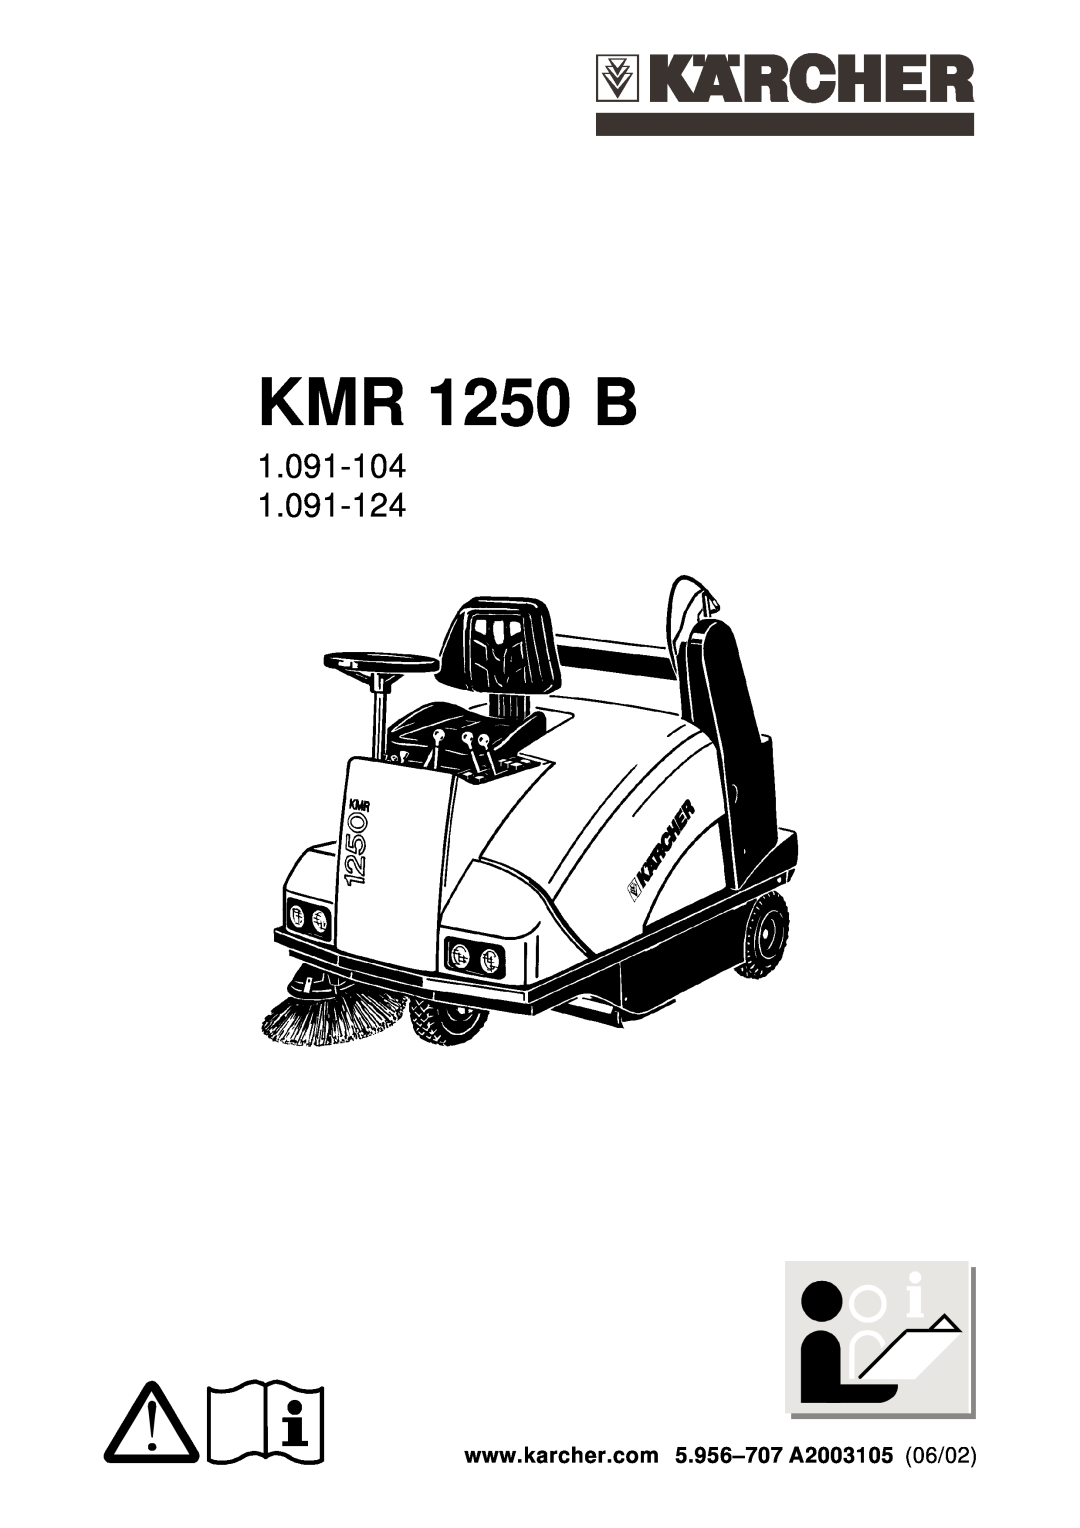 Karcher KMR 1250 B manual 1.091-104 1.091-124 